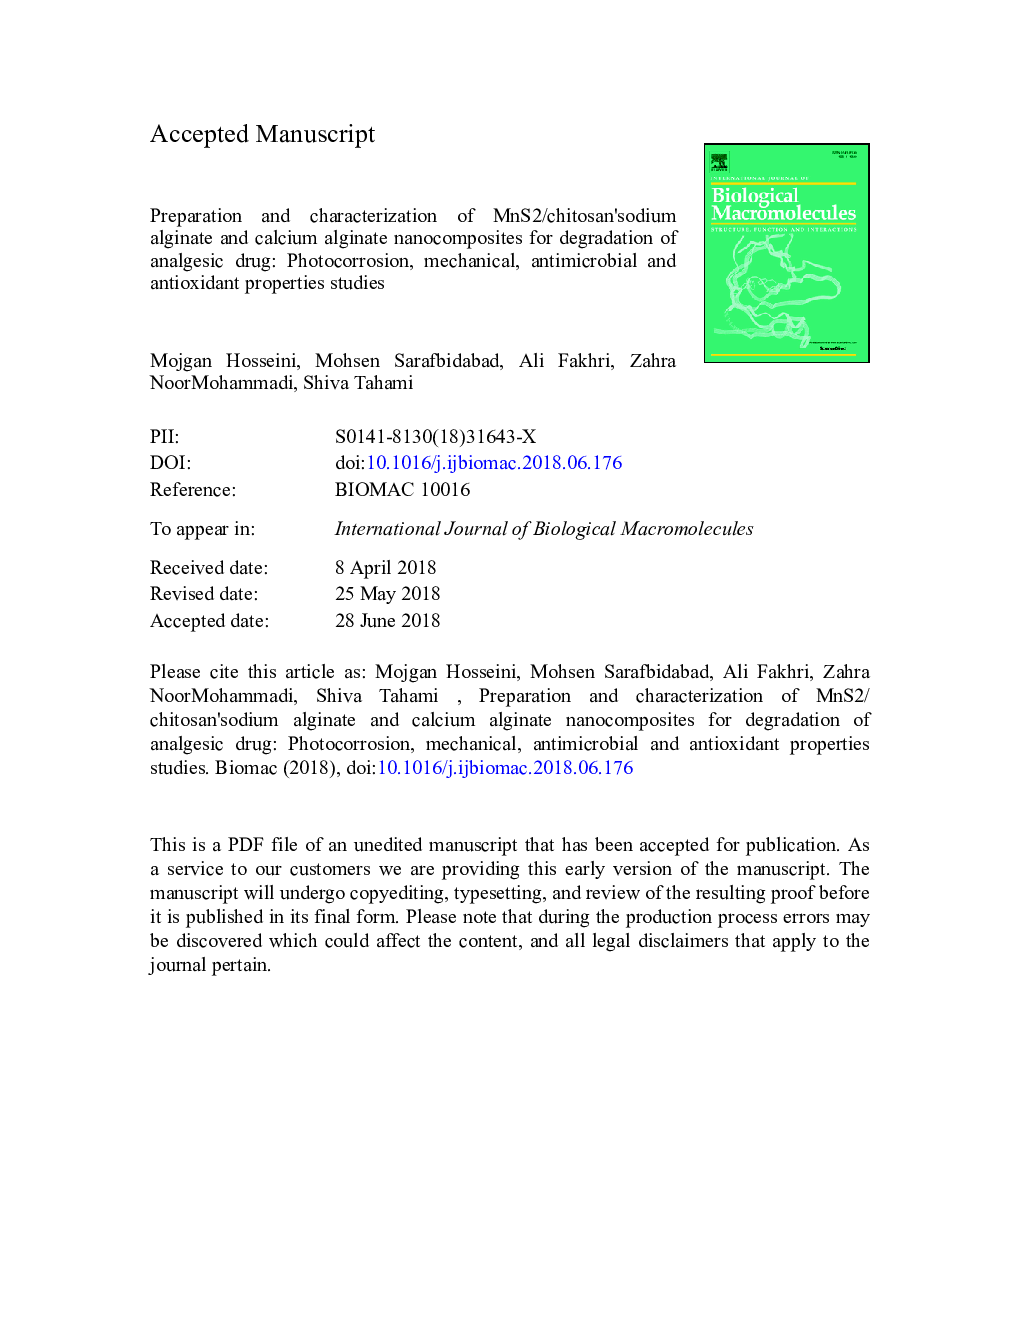 Preparation and characterization of MnS2/chitosanâsodium alginate and calcium alginate nanocomposites for degradation of analgesic drug: Photocorrosion, mechanical, antimicrobial and antioxidant properties studies